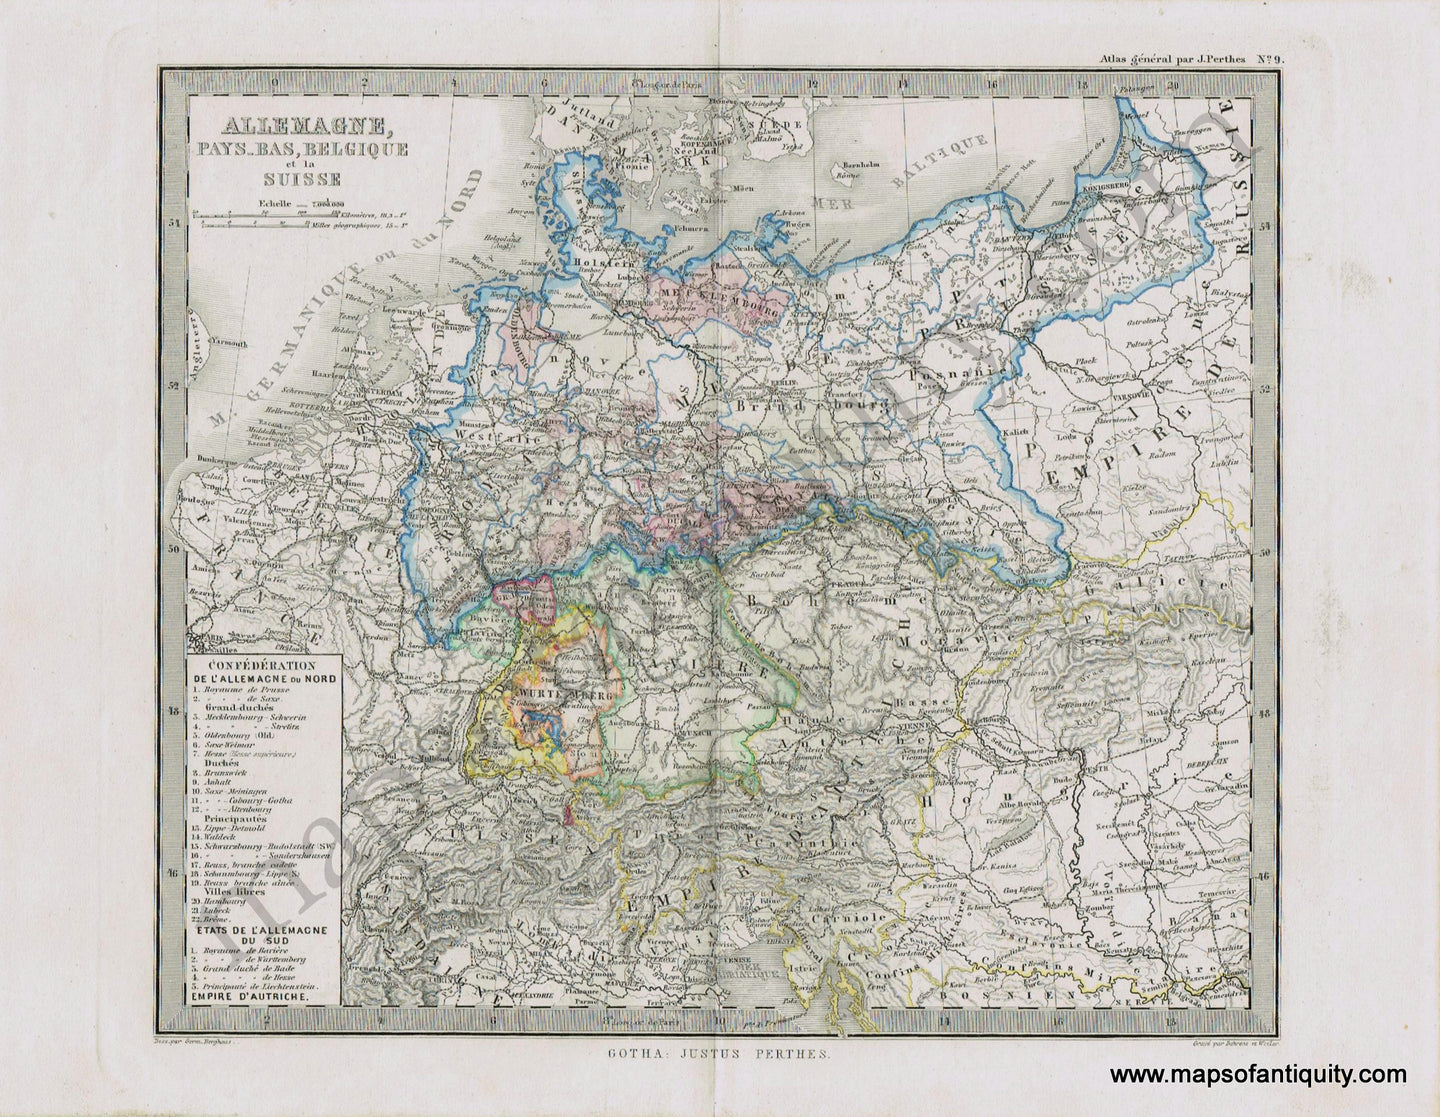 Germany-Etates-de-l'Allemagne-Perthes-1871-Antique-Map-1870s-1800s-19th-century-Maps-of-Antiquity